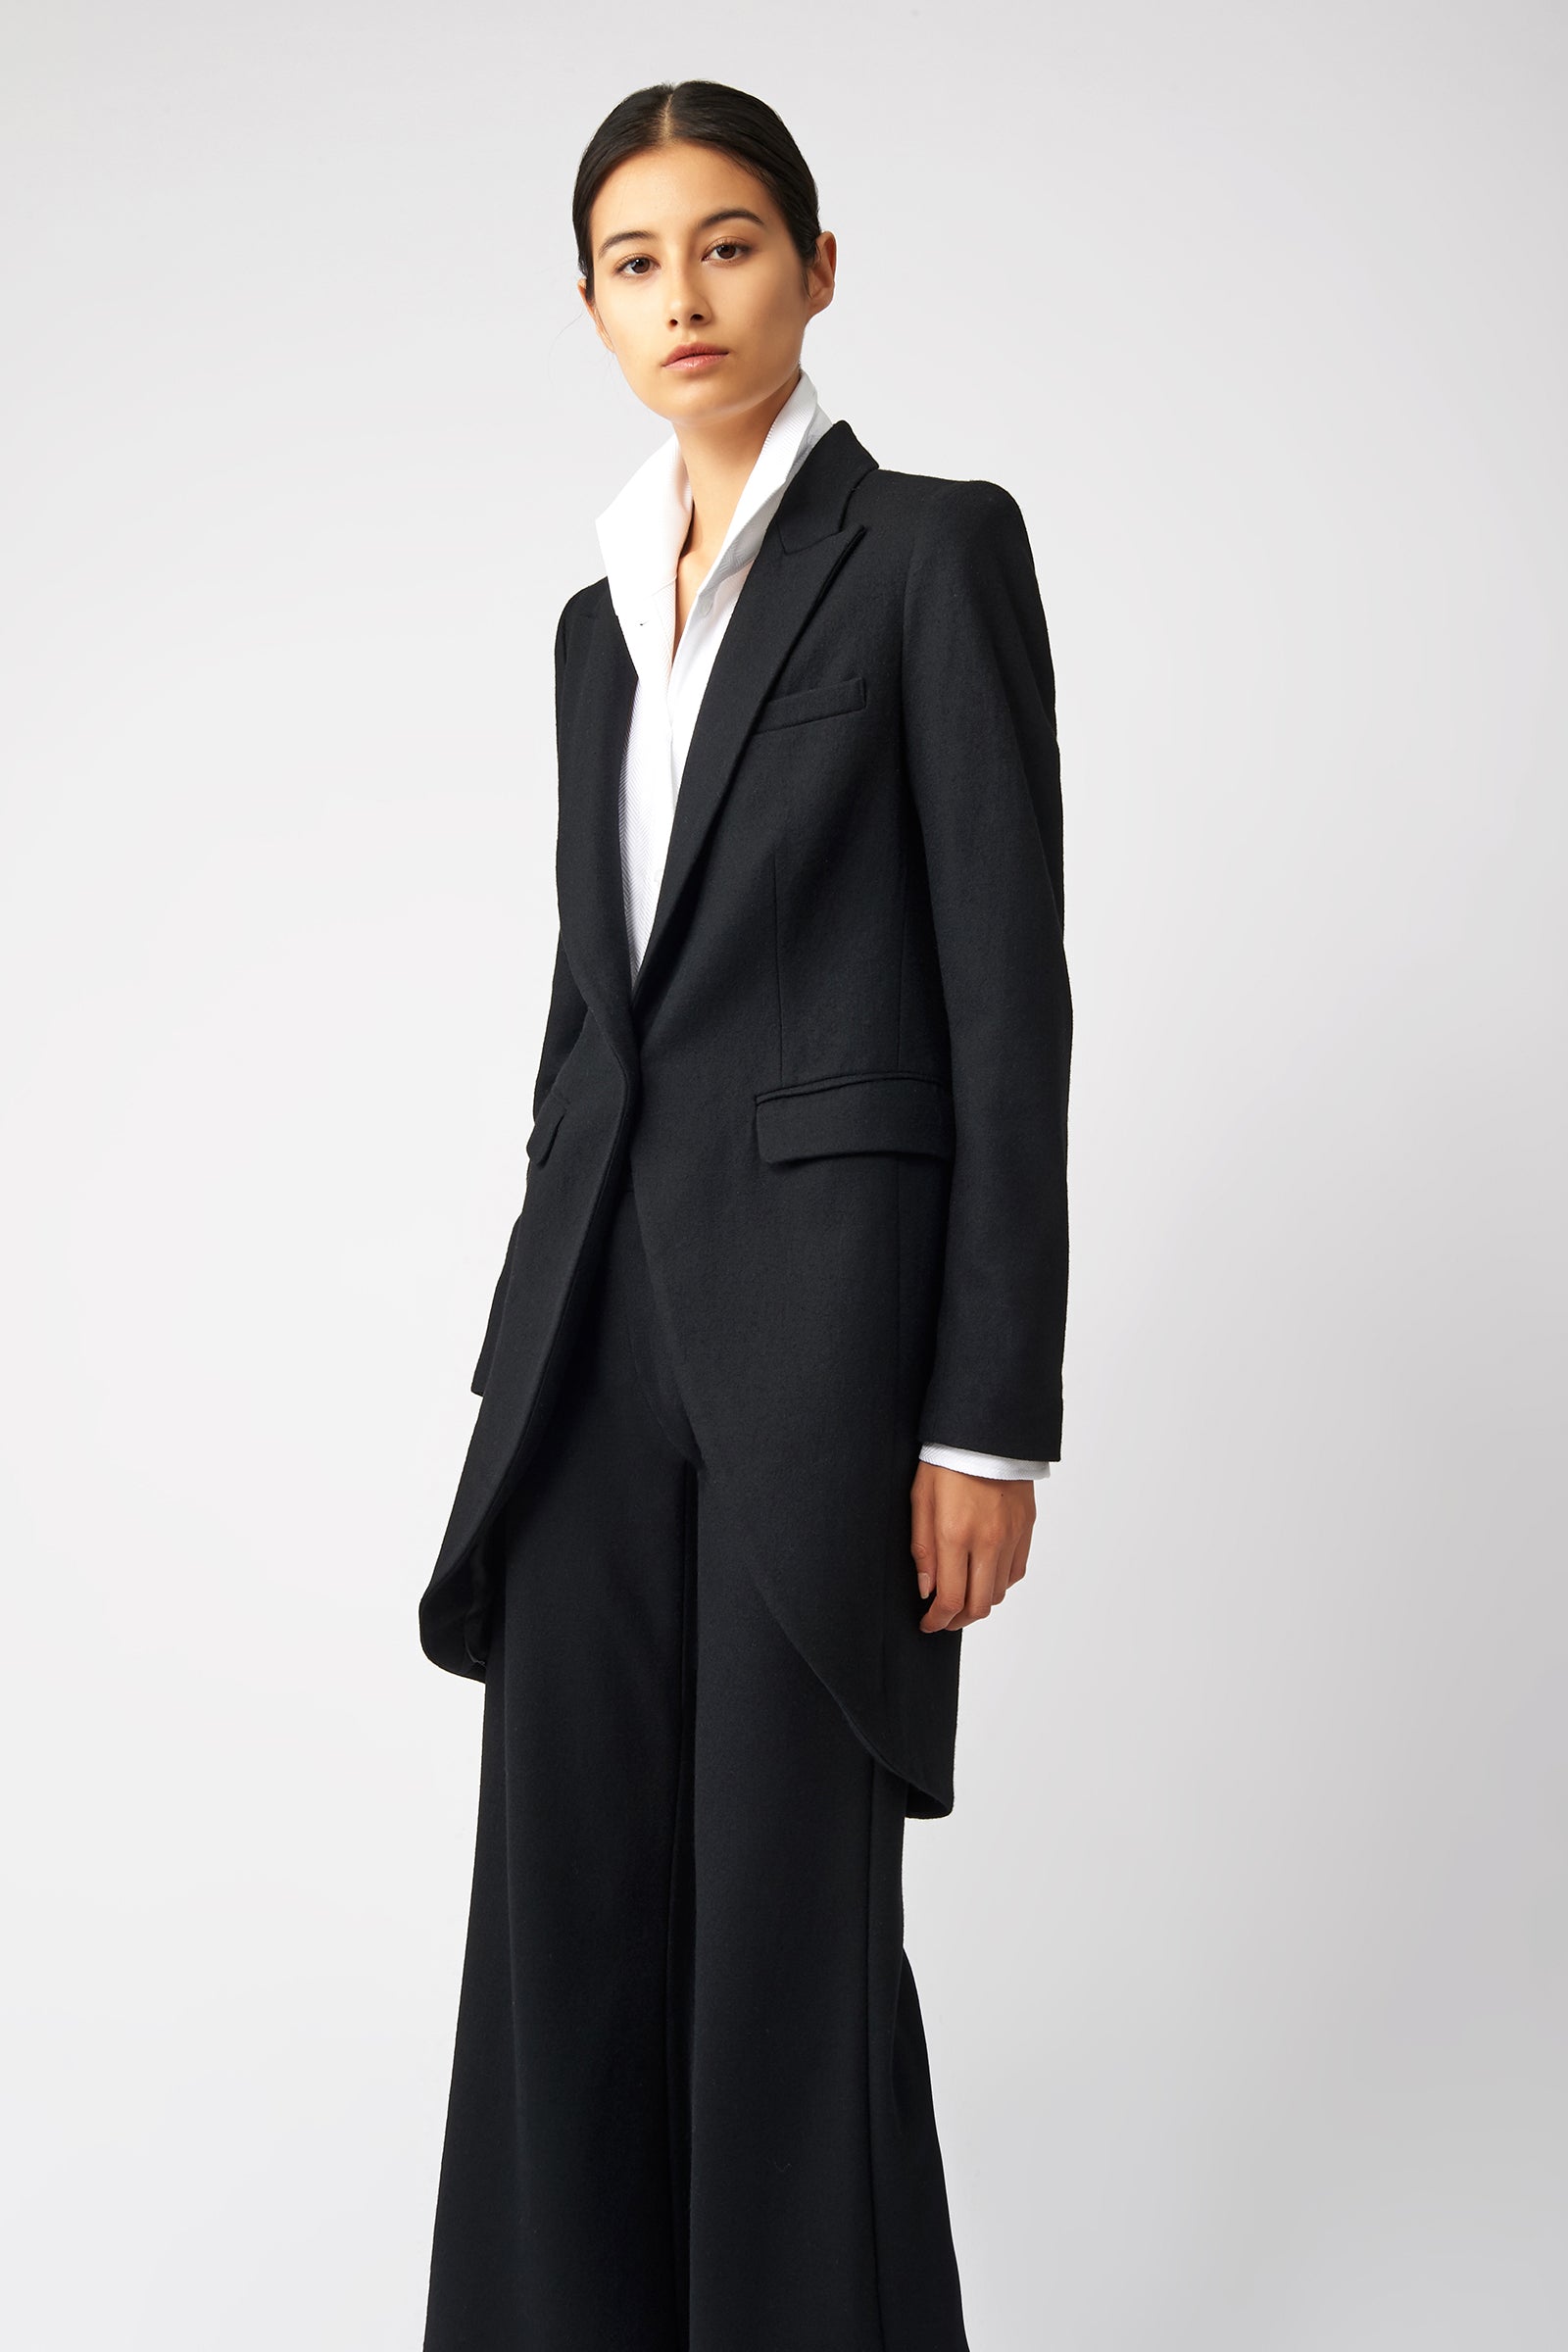 Kal Rieman Tailored Tux Blazer in Black on Model Side View